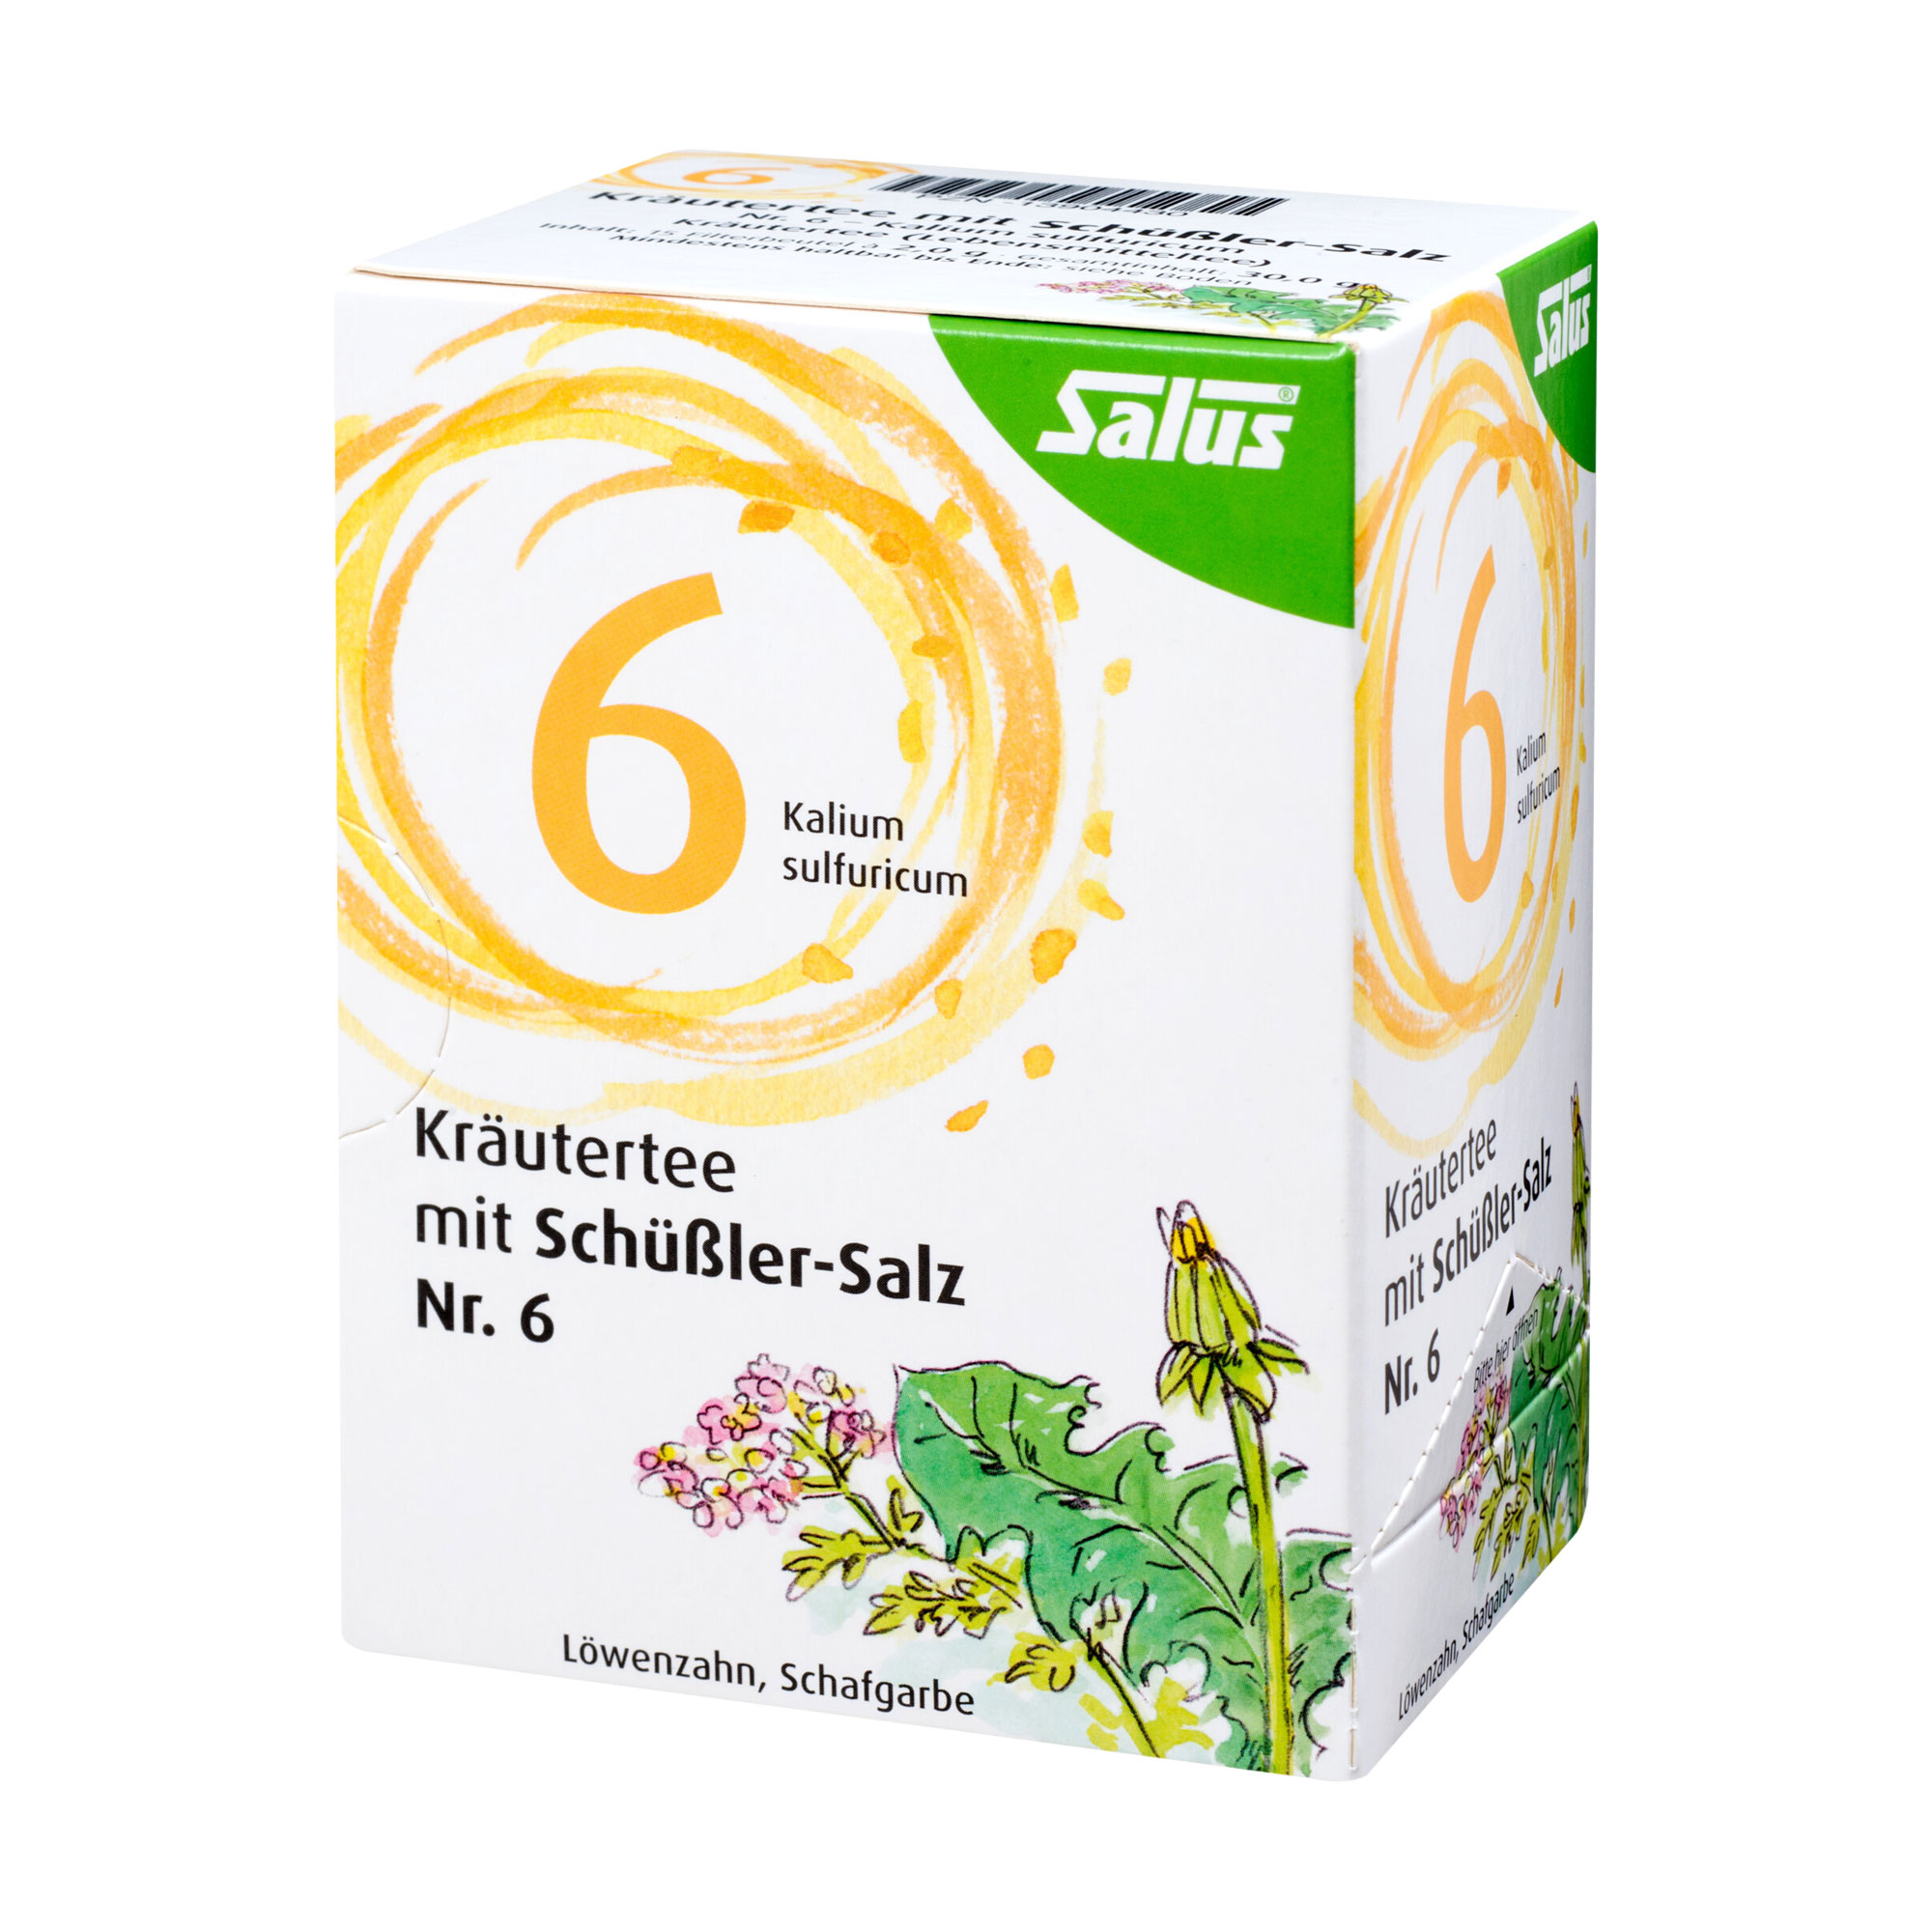 Kräutertee mit Löwenzahn und Schafgarbe. Mit Schüßler Salz Nr 6. - Kalium sulfuricum. Mit fein-herber Bitternote.